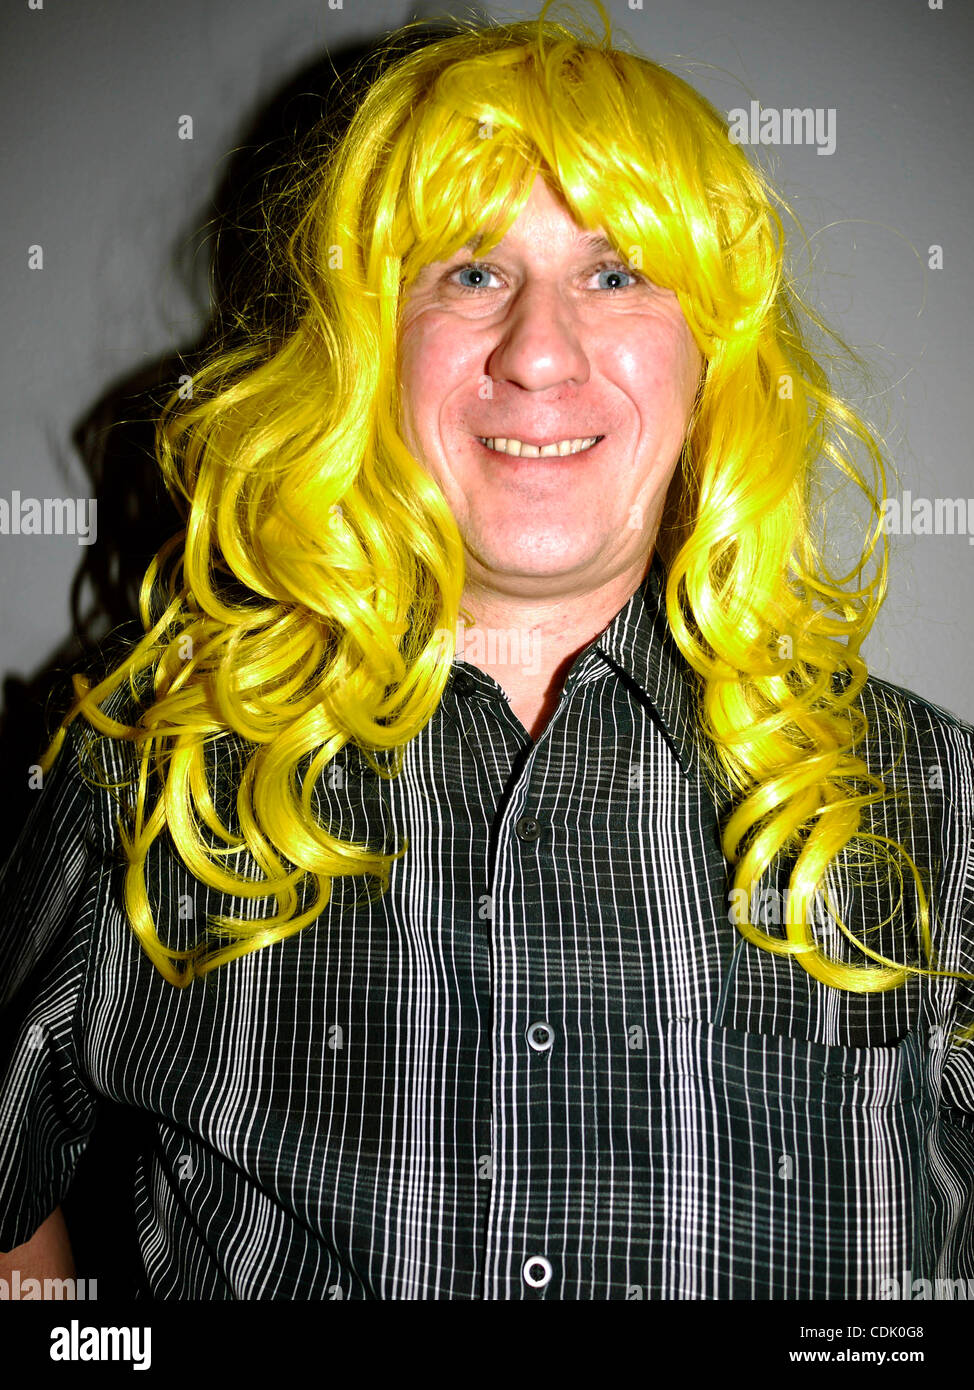 Mar 06, 2011 - New York, New York, États-Unis - Homme portant perruque  jaune. Beauty Show International est le premier salon professionnel des  membres de l'industrie de beauté professionnels. En 2010, plus